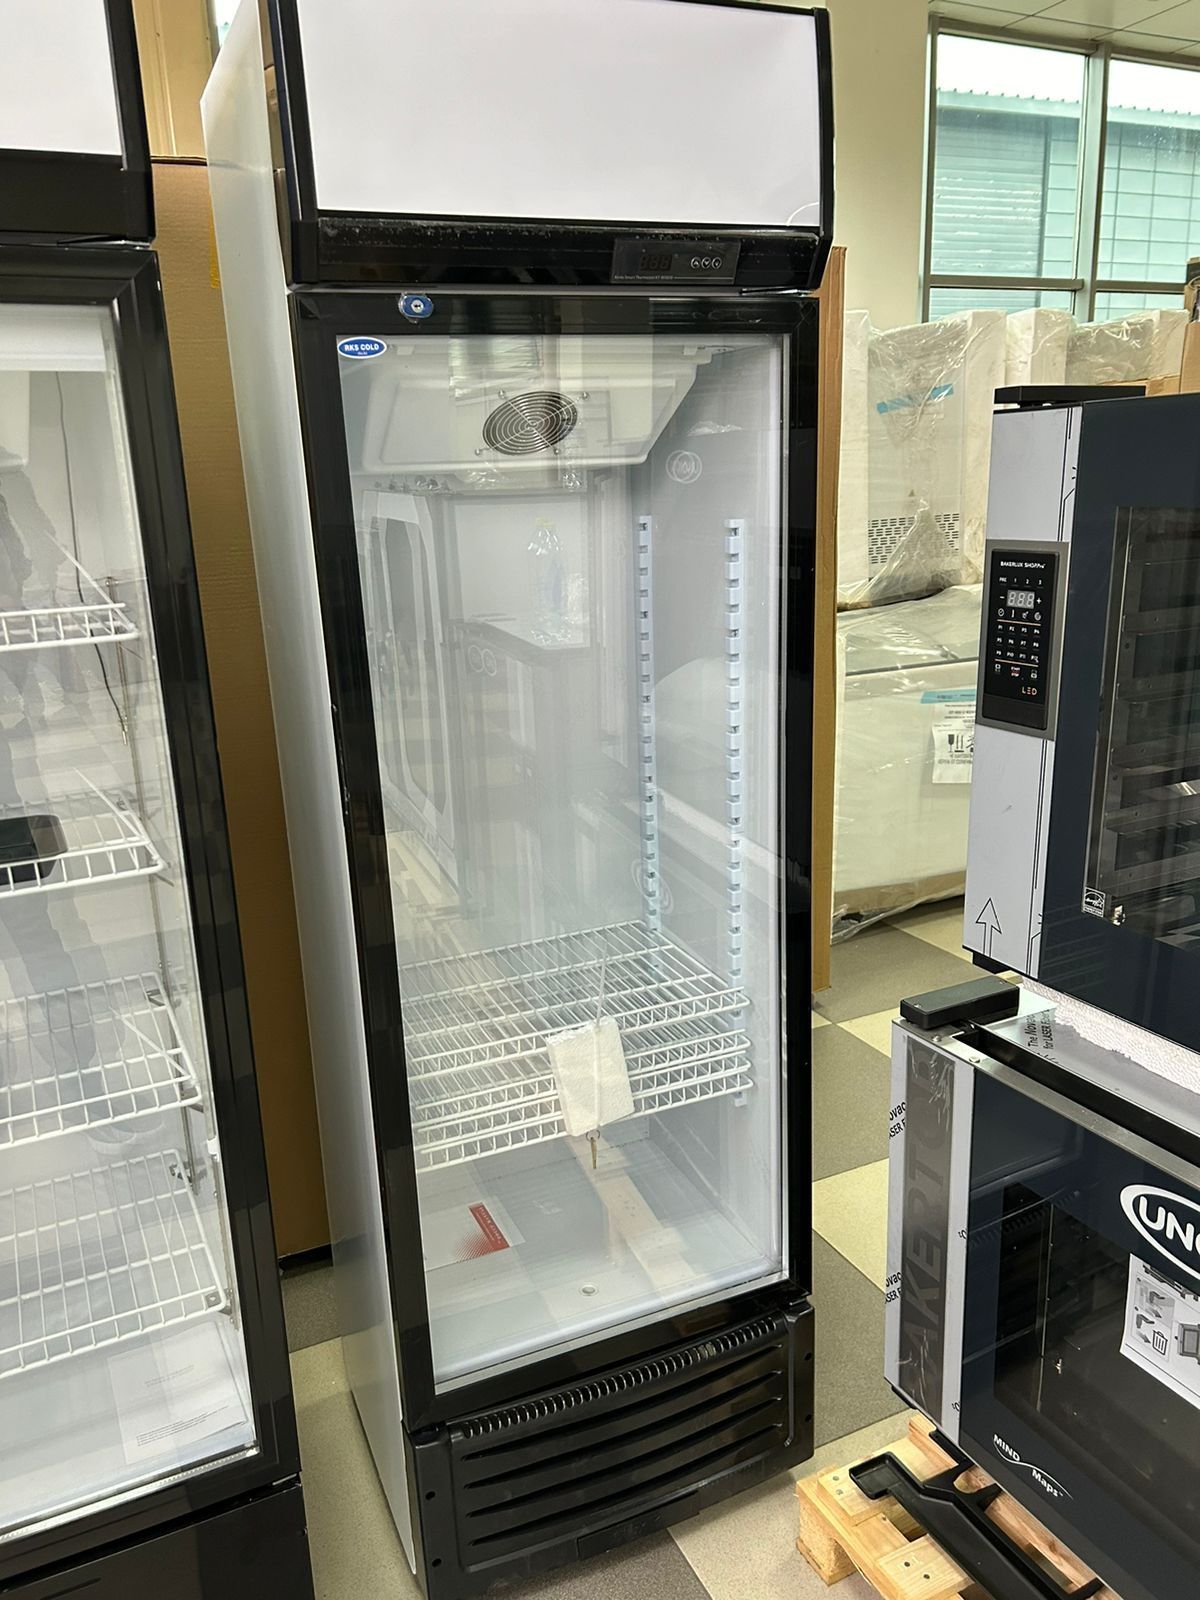 Шкафы витринные холодильники вертикальные морозильники